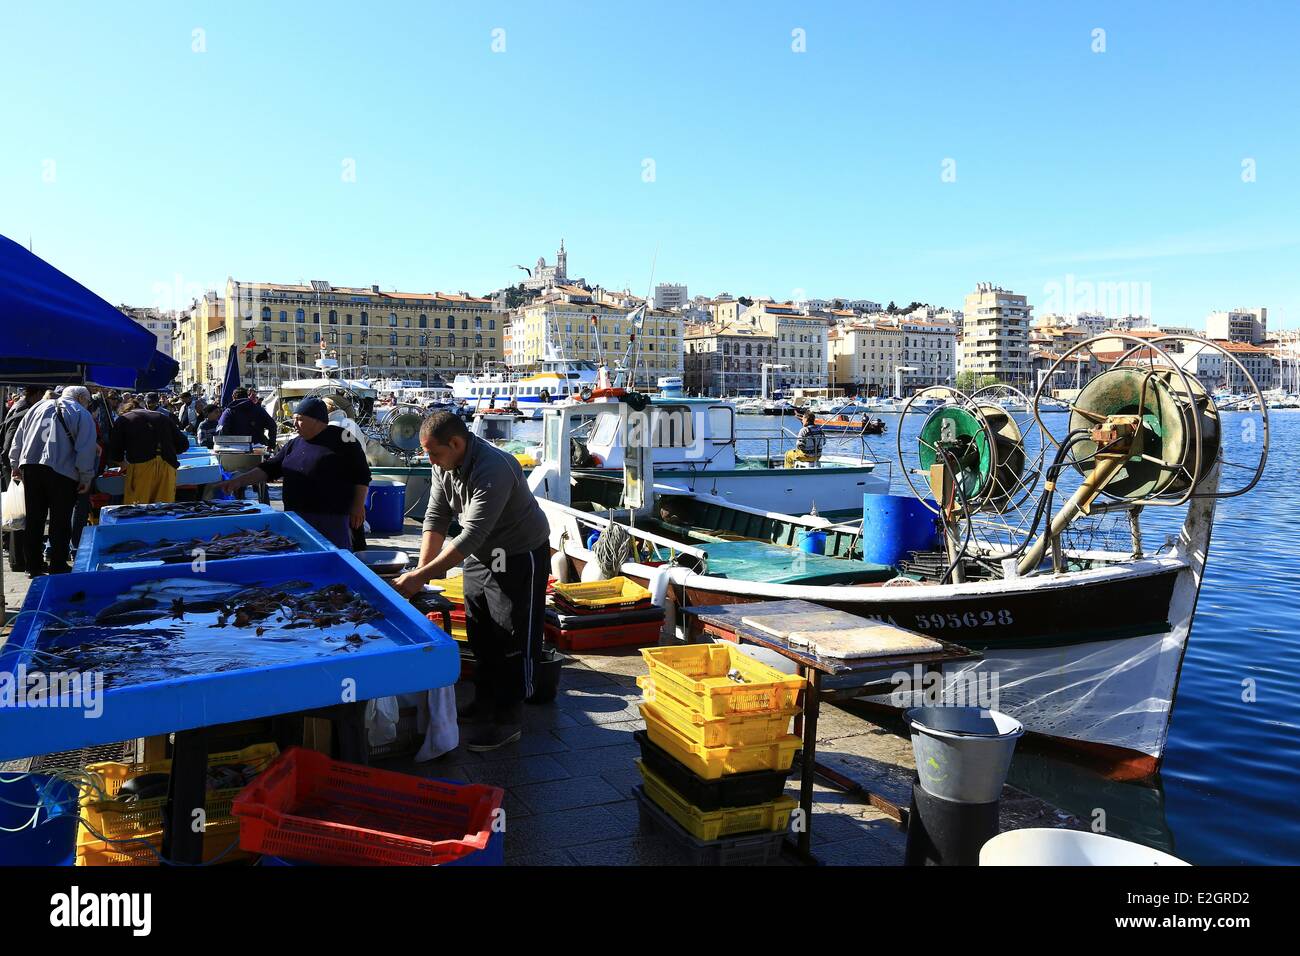 France Bouches du Rhône Marseille capitale européenne de la culture 2013 Vieux Port quai de la Fraternite fish market Banque D'Images